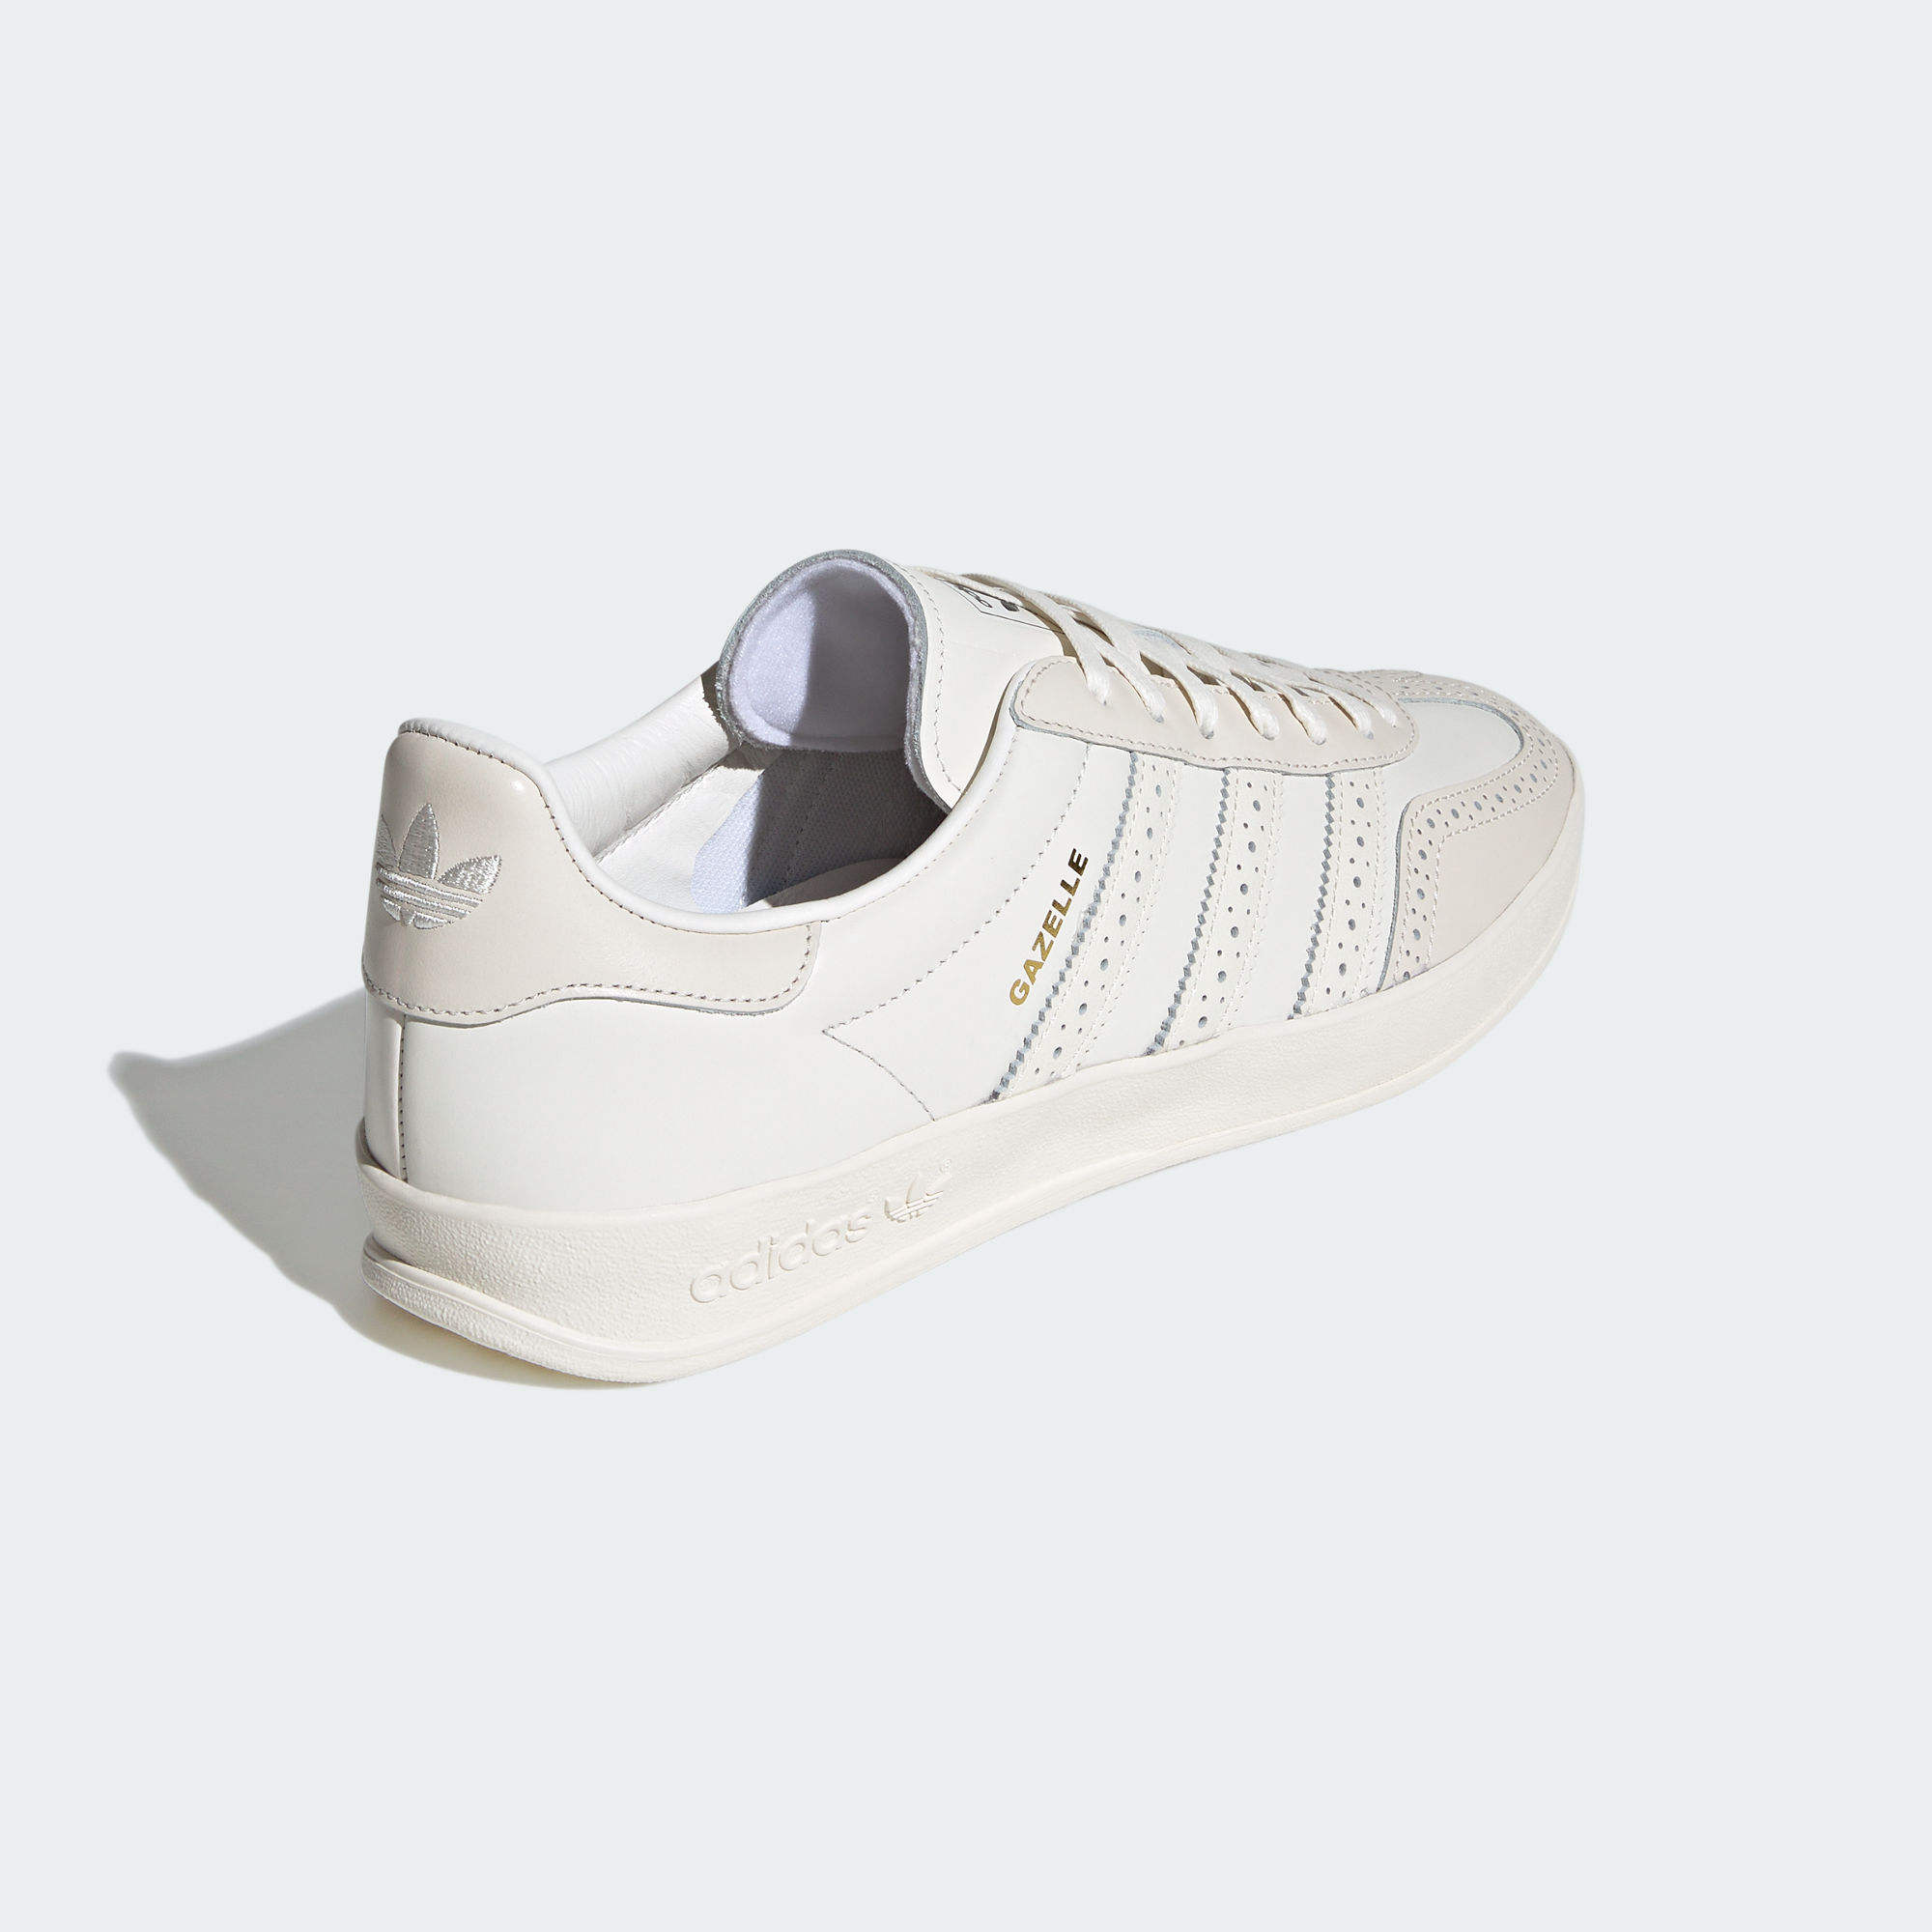 GAZELLE 低筒室內運動鞋- 白色| 女子| adidas(愛迪達)香港官方網上商店